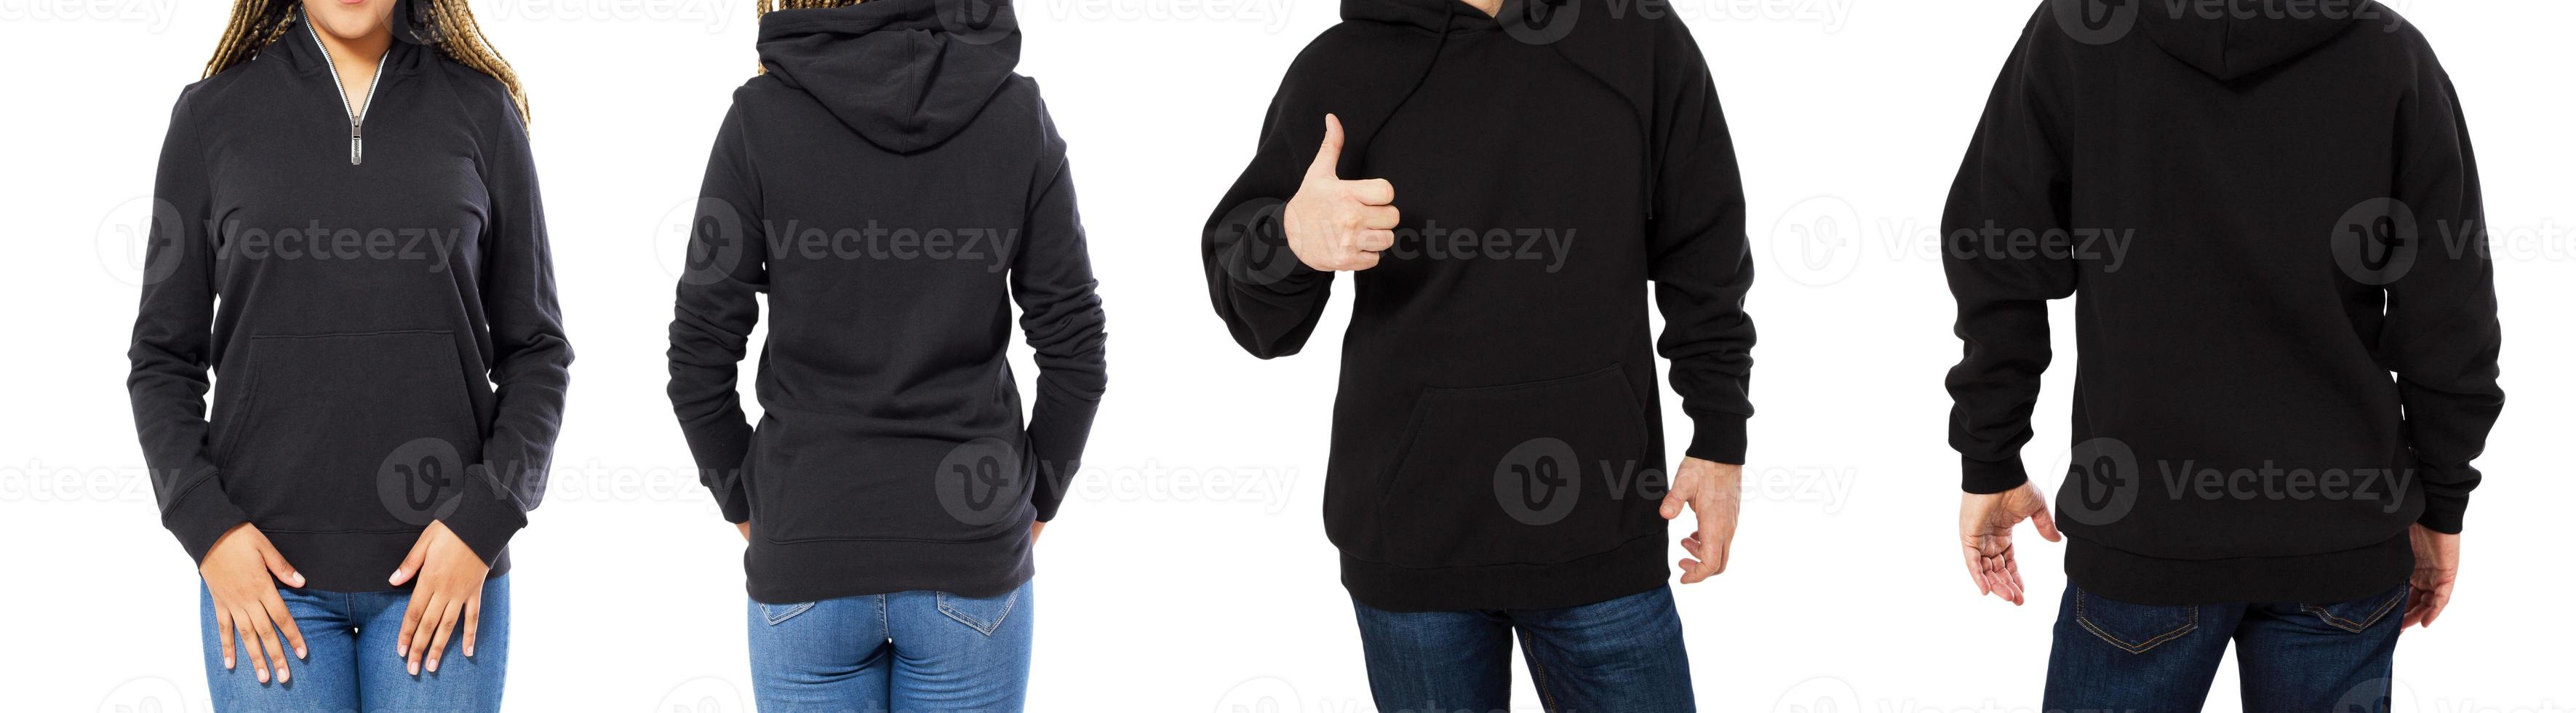 felpa con cappuccio femminile e maschile mock up isolata - set cappuccio vista anteriore e posteriore, ragazza e uomo in pullover nero vuoto foto